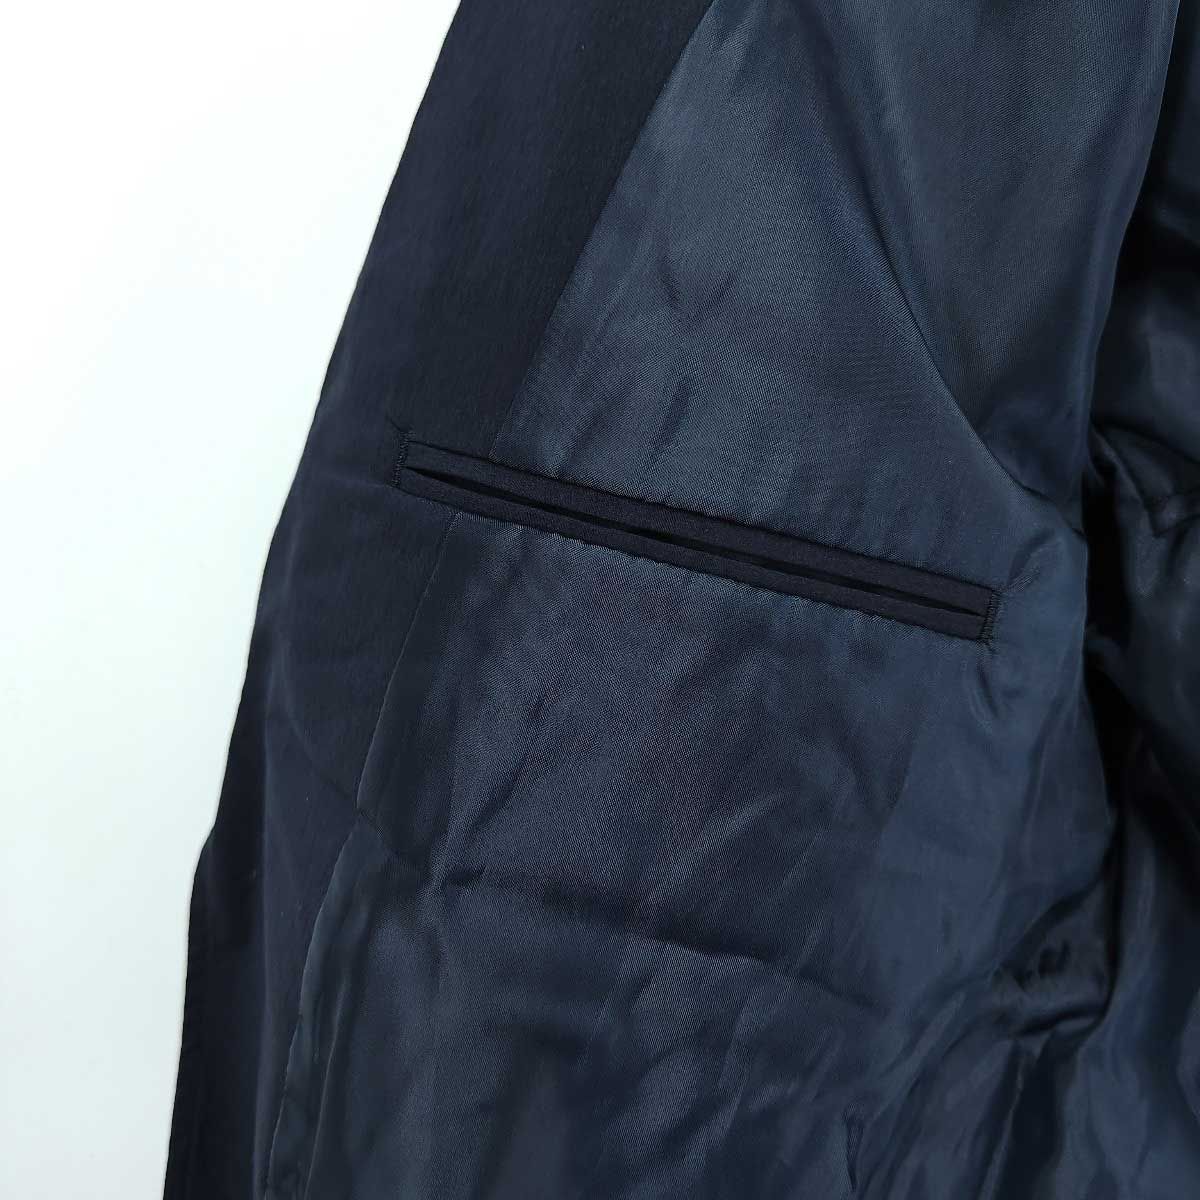 【未使用】[上下セット] グランフェイズ ジャケット パンツ セットアップ GRAND PHASE XL ネイビー メンズ 春夏ファッション小物